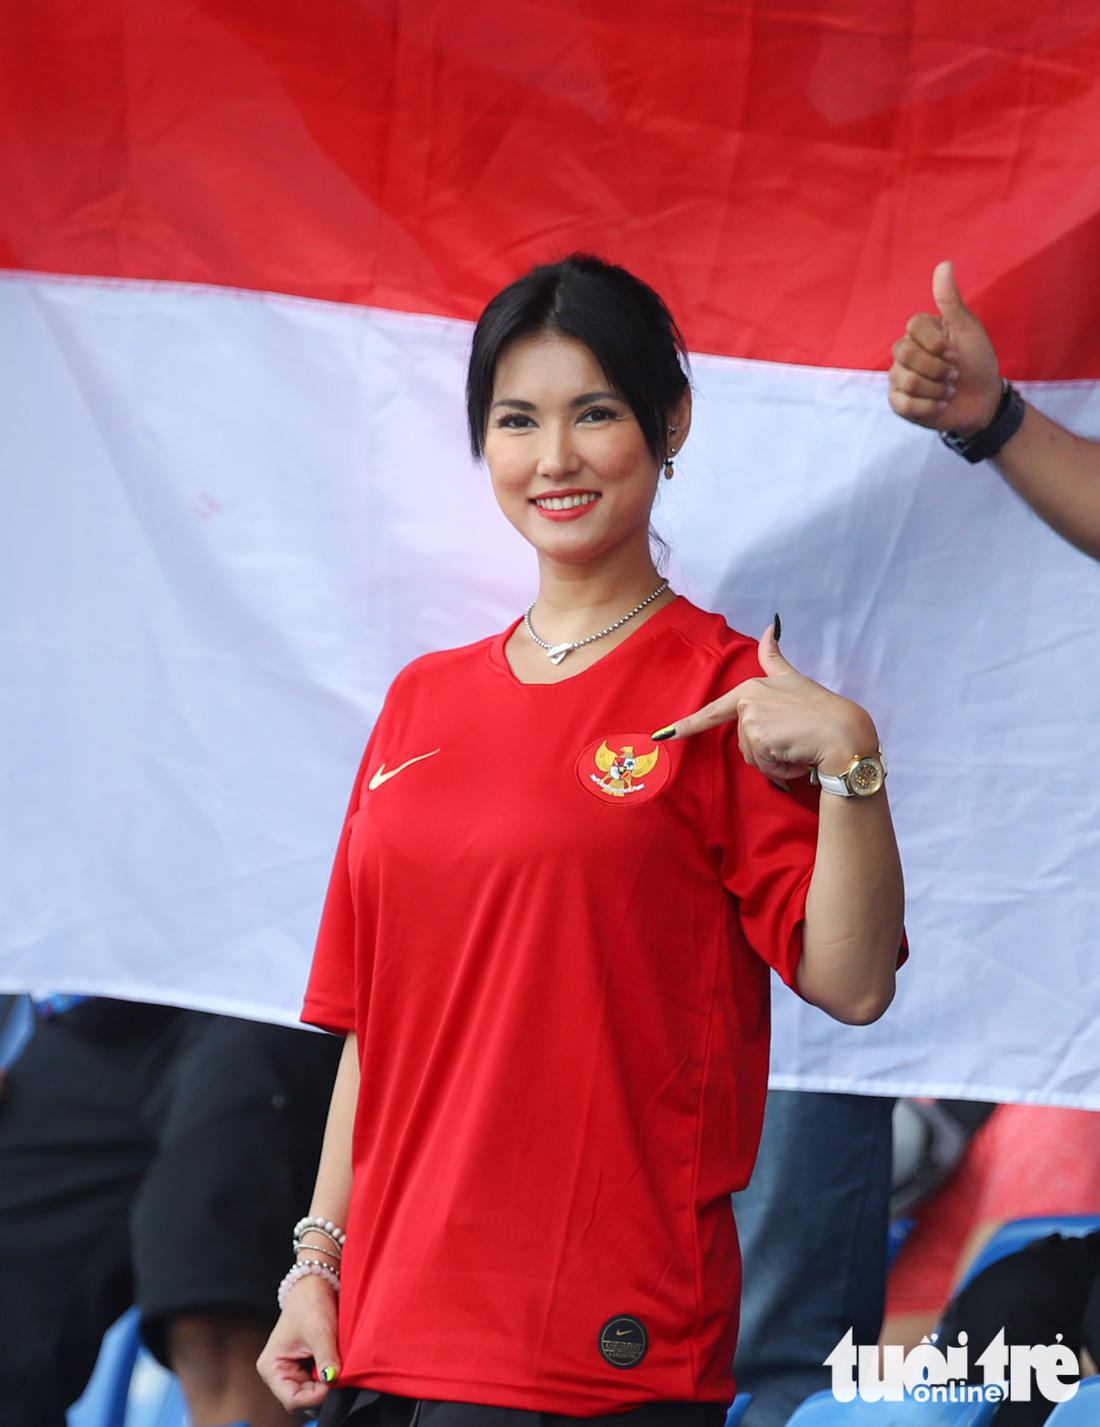 Maria Ozawa nóng bỏng trên khán đài trận đấu Thái Lan - Indonesia - Ảnh 2.